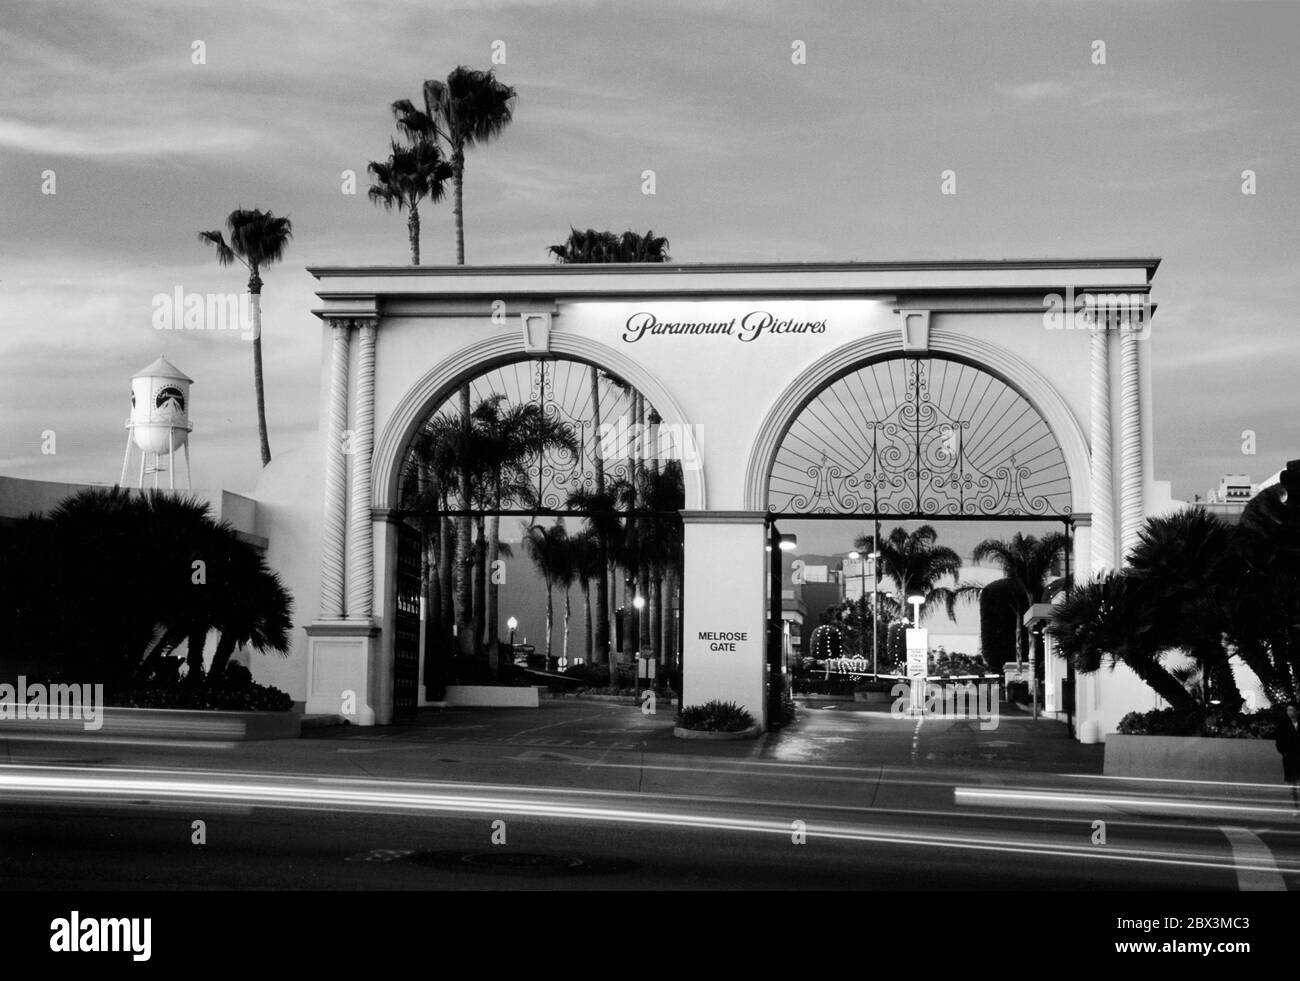 Außenansicht des Paramount Pictures Studios von außerhalb Melrose Gate auf Melrose Ave. In Hollywood bei Sonnenuntergang. Stockfoto